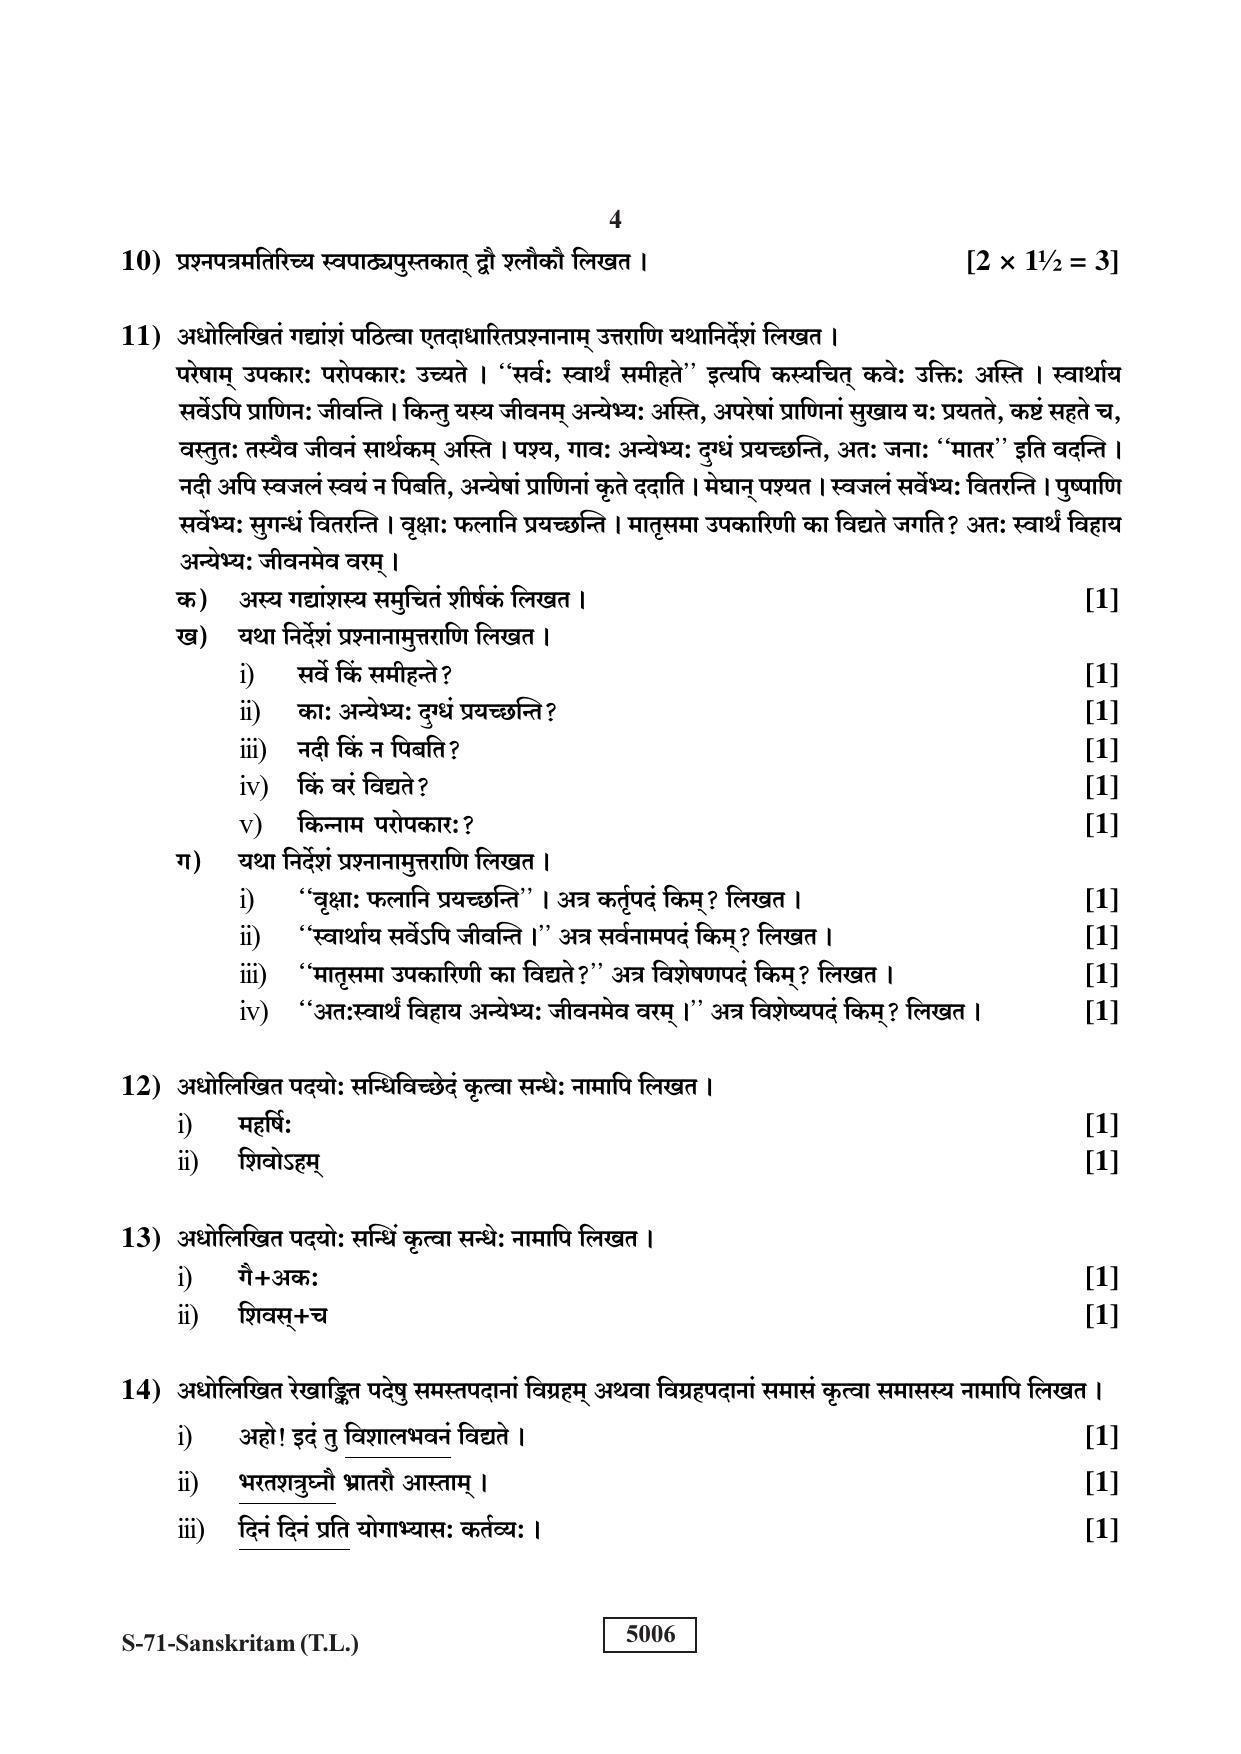 RBSE Class 10 Sanskrit (T.L.) 2019 Question Paper - Page 4